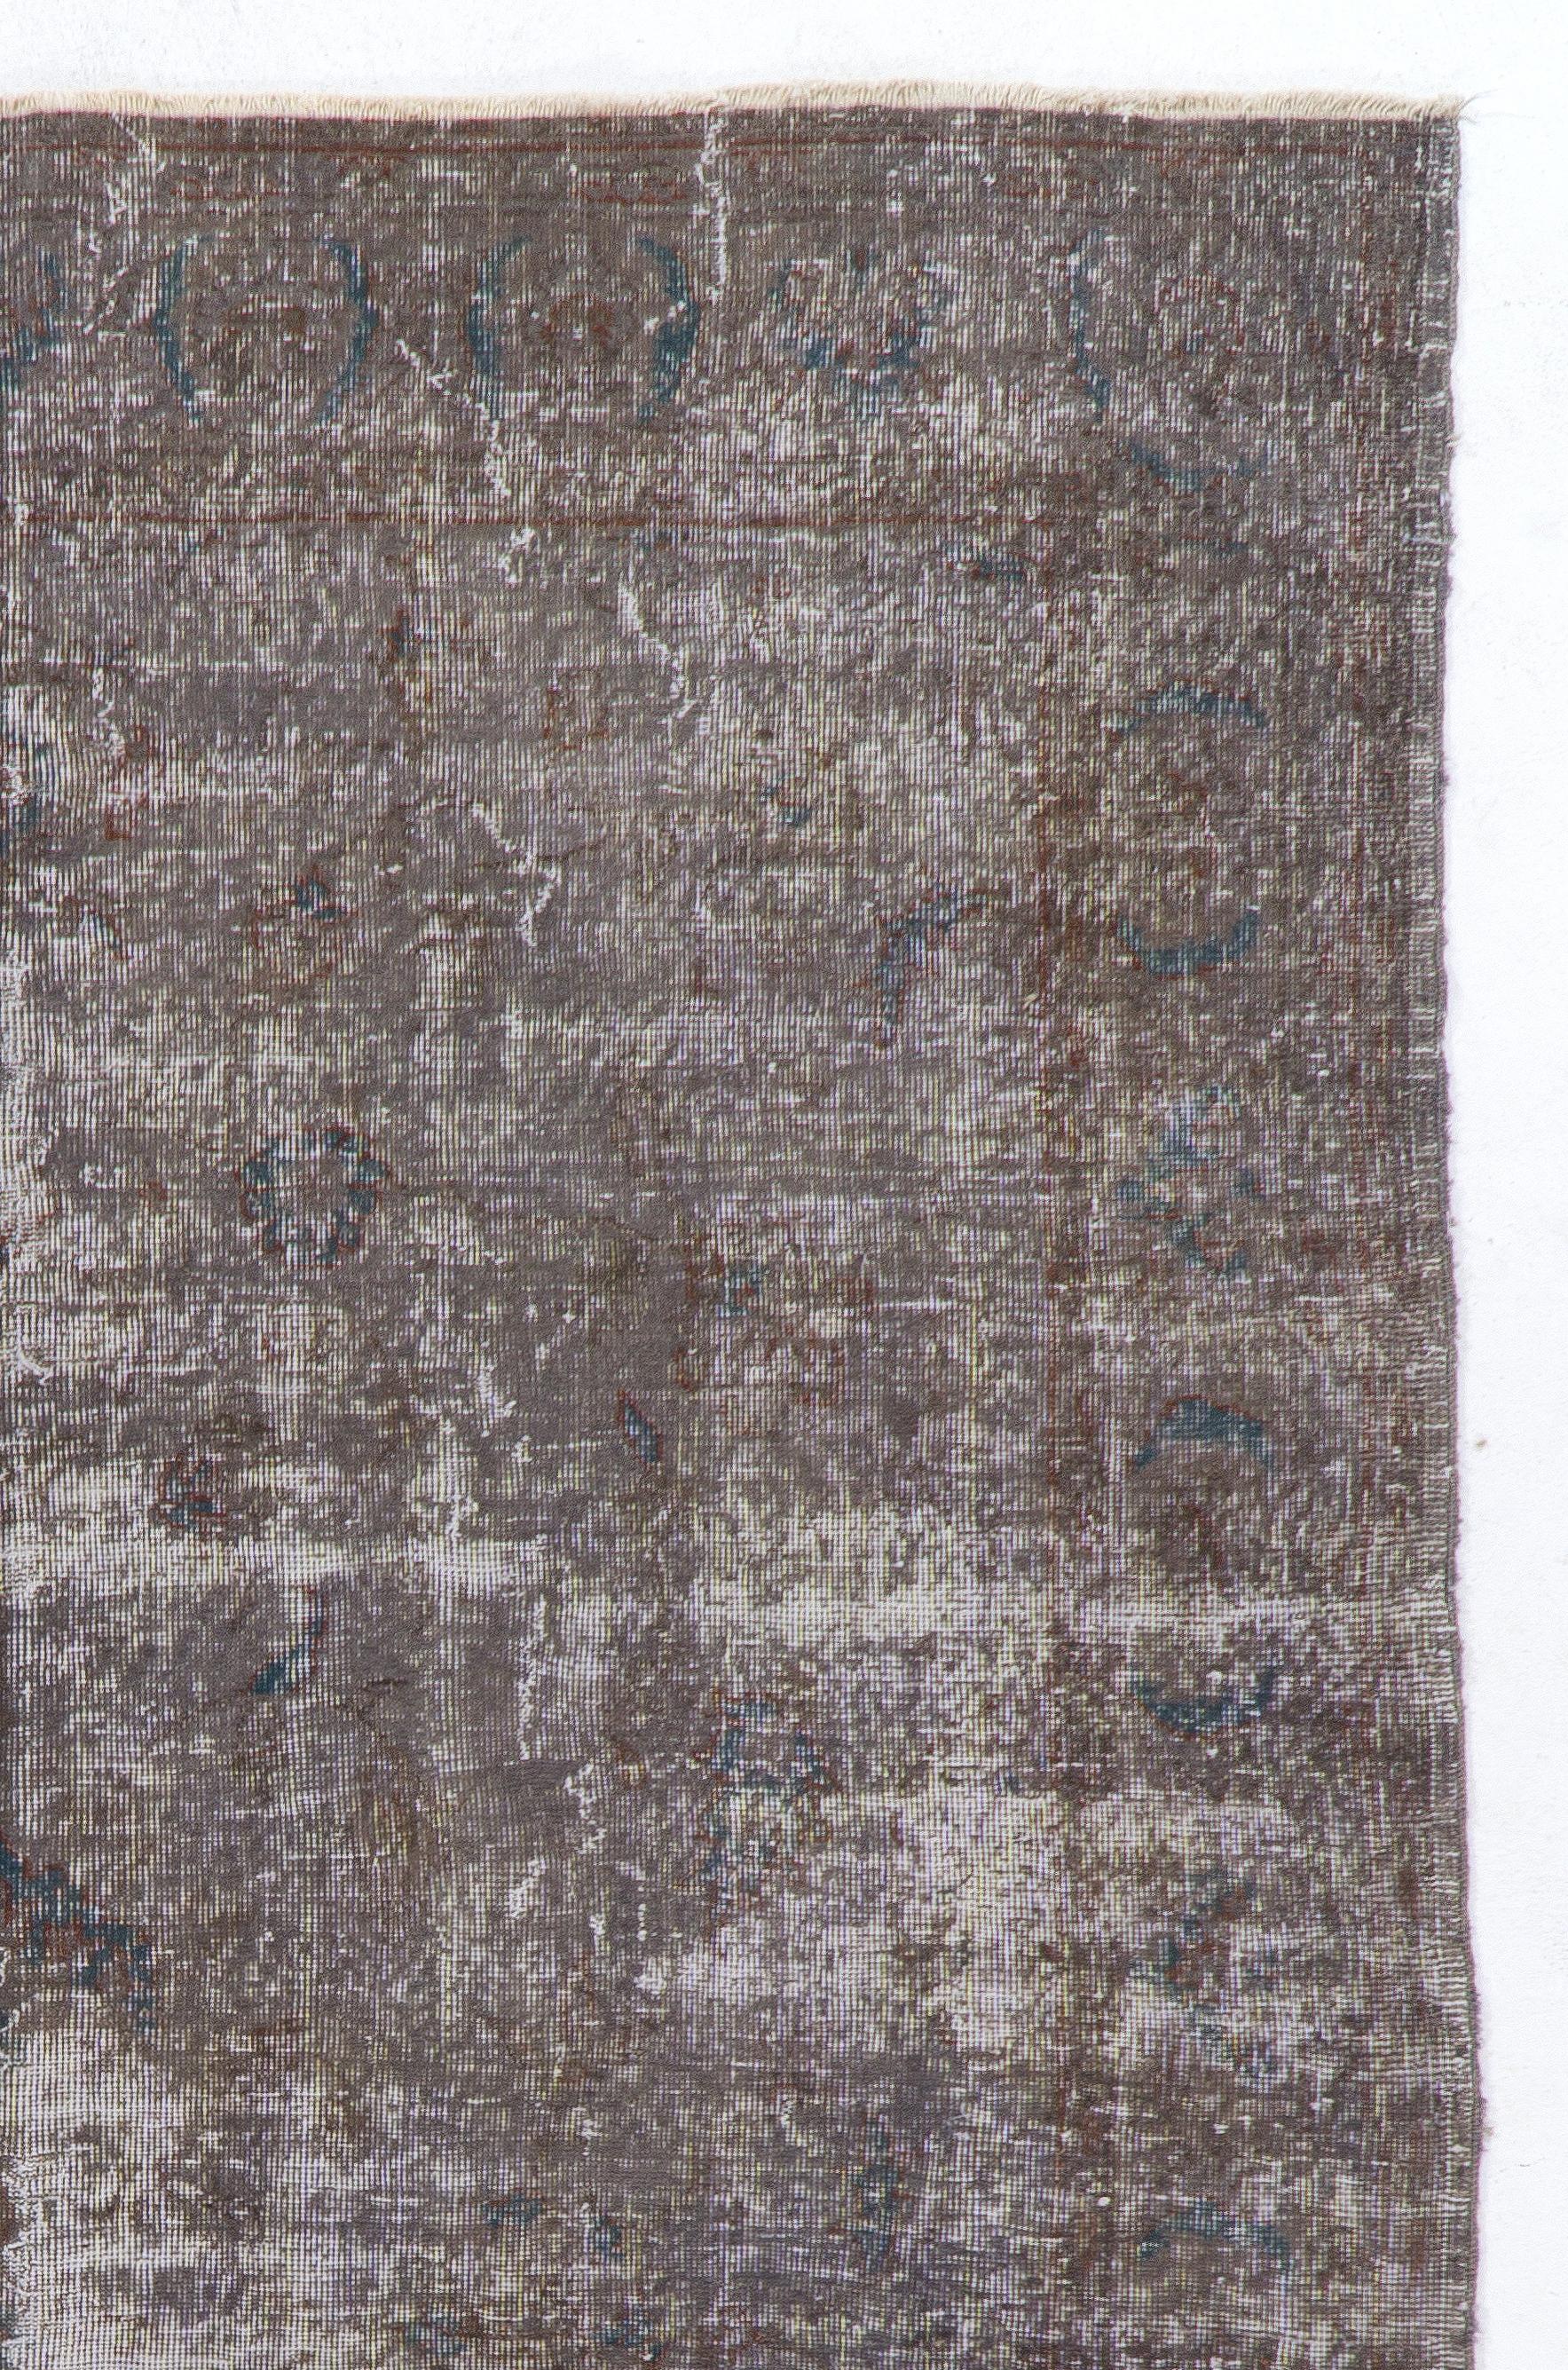 Ein handgeknüpfter türkischer Vintage-Knüpfstoff in Taupe-Grau mit Blattranken und Rosettenmotiven. Er ist fein handgeknüpft und hat einen strapazierten, niedrigen Wollflor auf Baumwollbasis mit einem antiquierten Look. Der Teppich ist in gutem